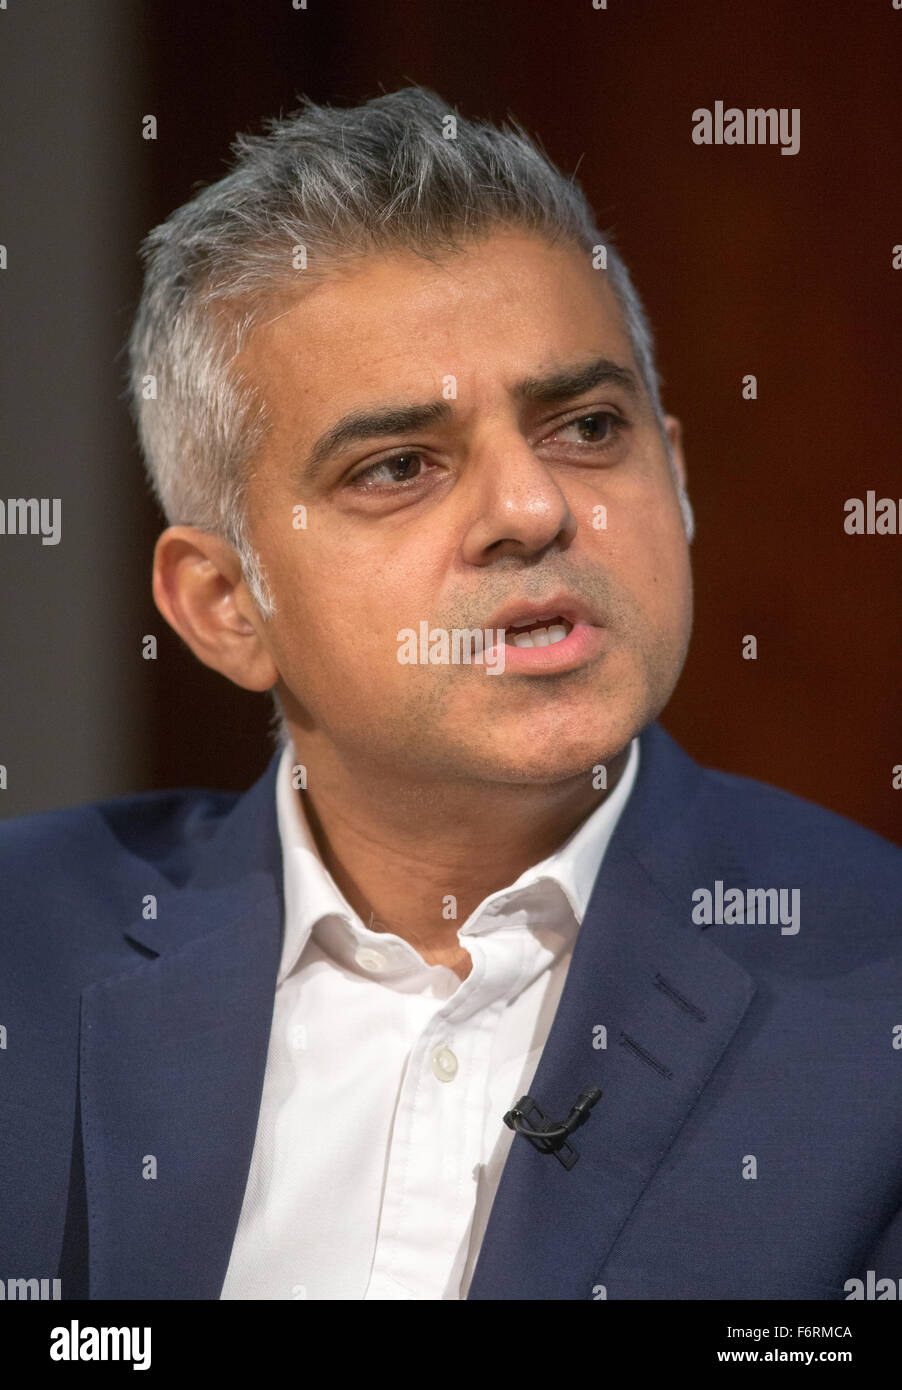 Candidat à la mairie de Londres pour le travail,Sadiq Khan,parle lors d'un événement sur ses projets pour Londres,s'il est élu Banque D'Images